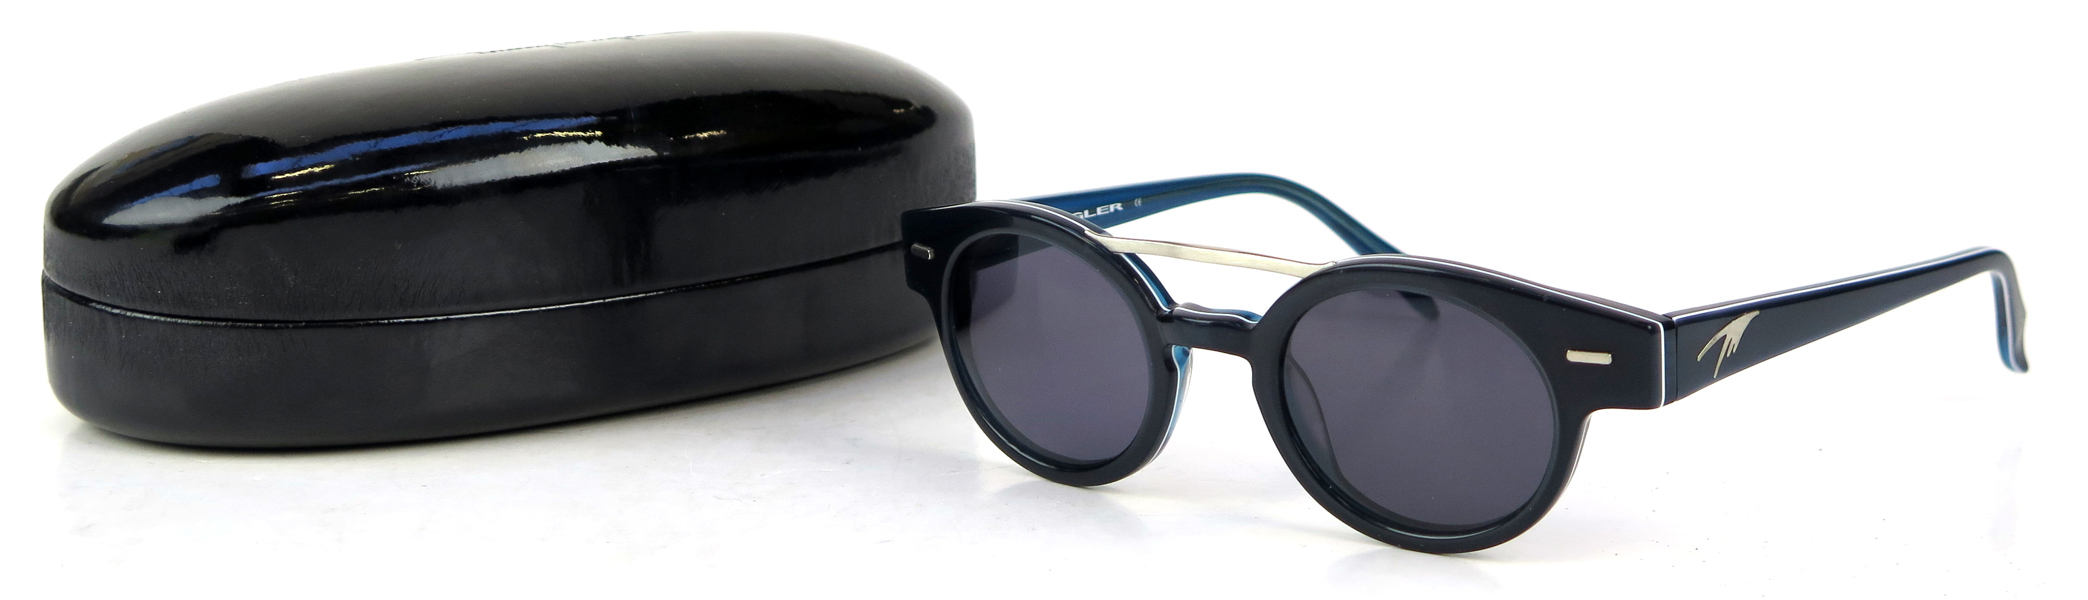 Solglasögon, 1 par, i etui, Thierry Mugler, TM 10190 C1, oanvända i originalförpackning_28800a_lg.jpeg